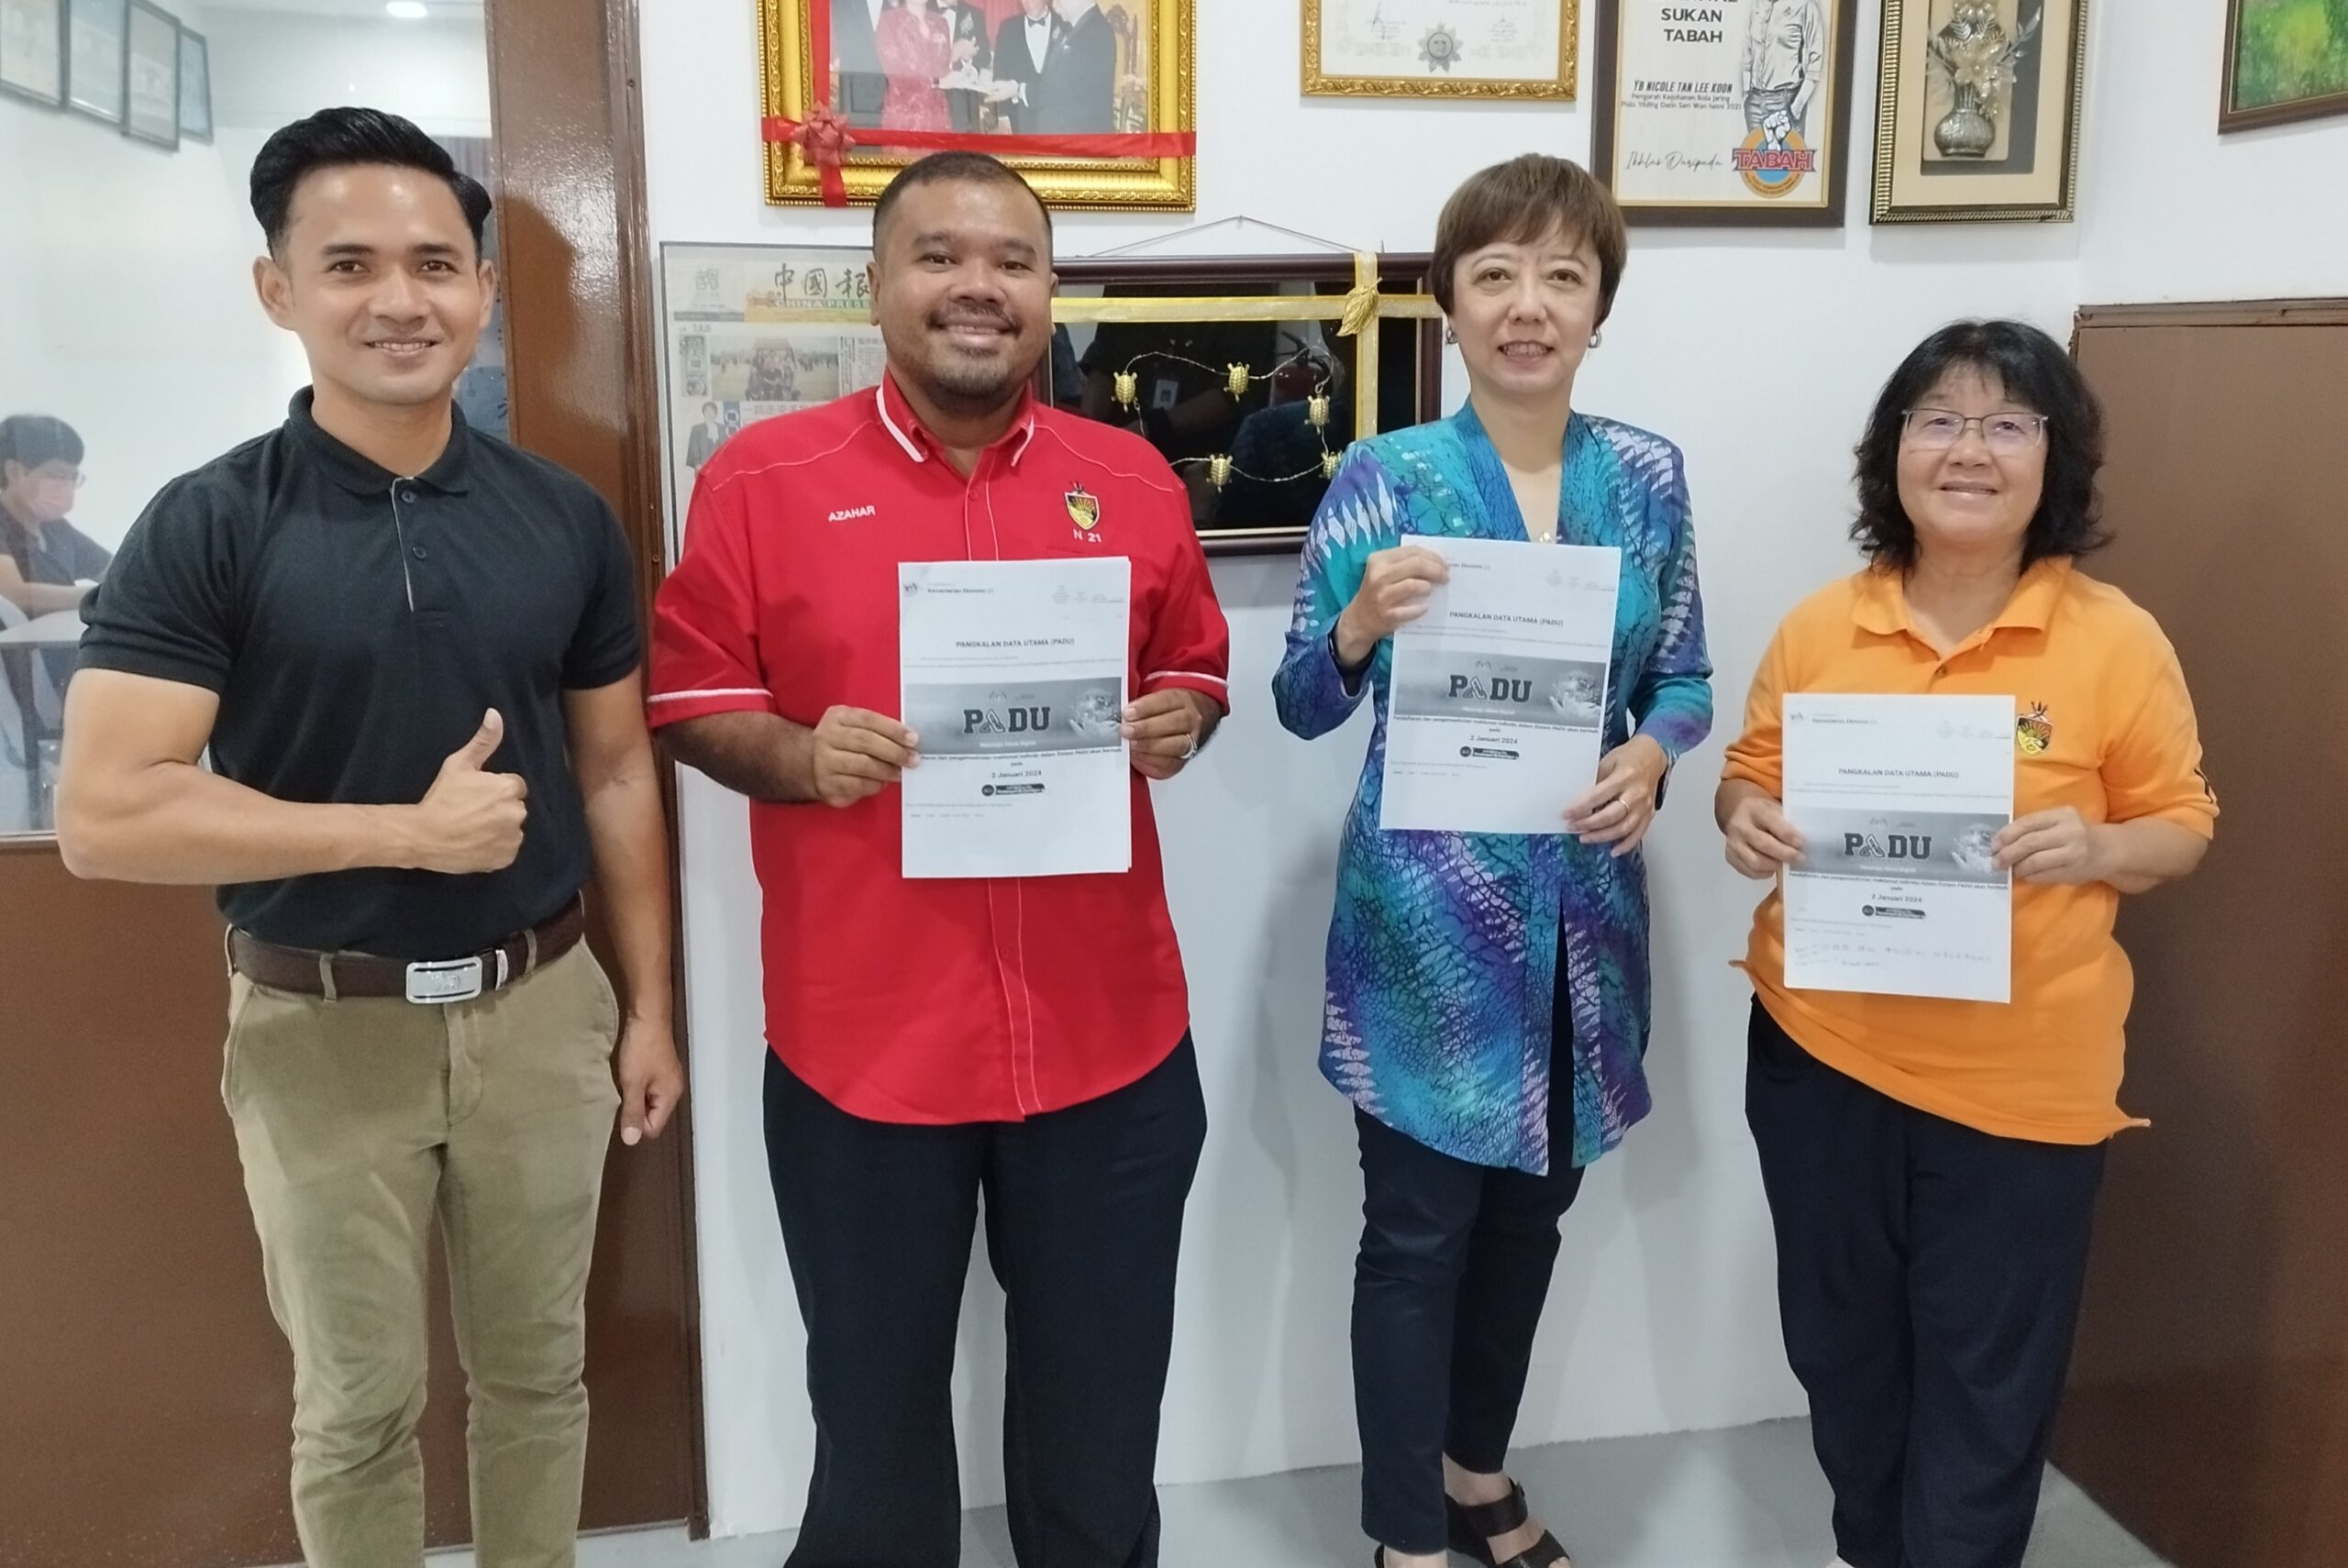 47,000 pengundi DUN Bukit Kepayang digalak daftar dalam PADU